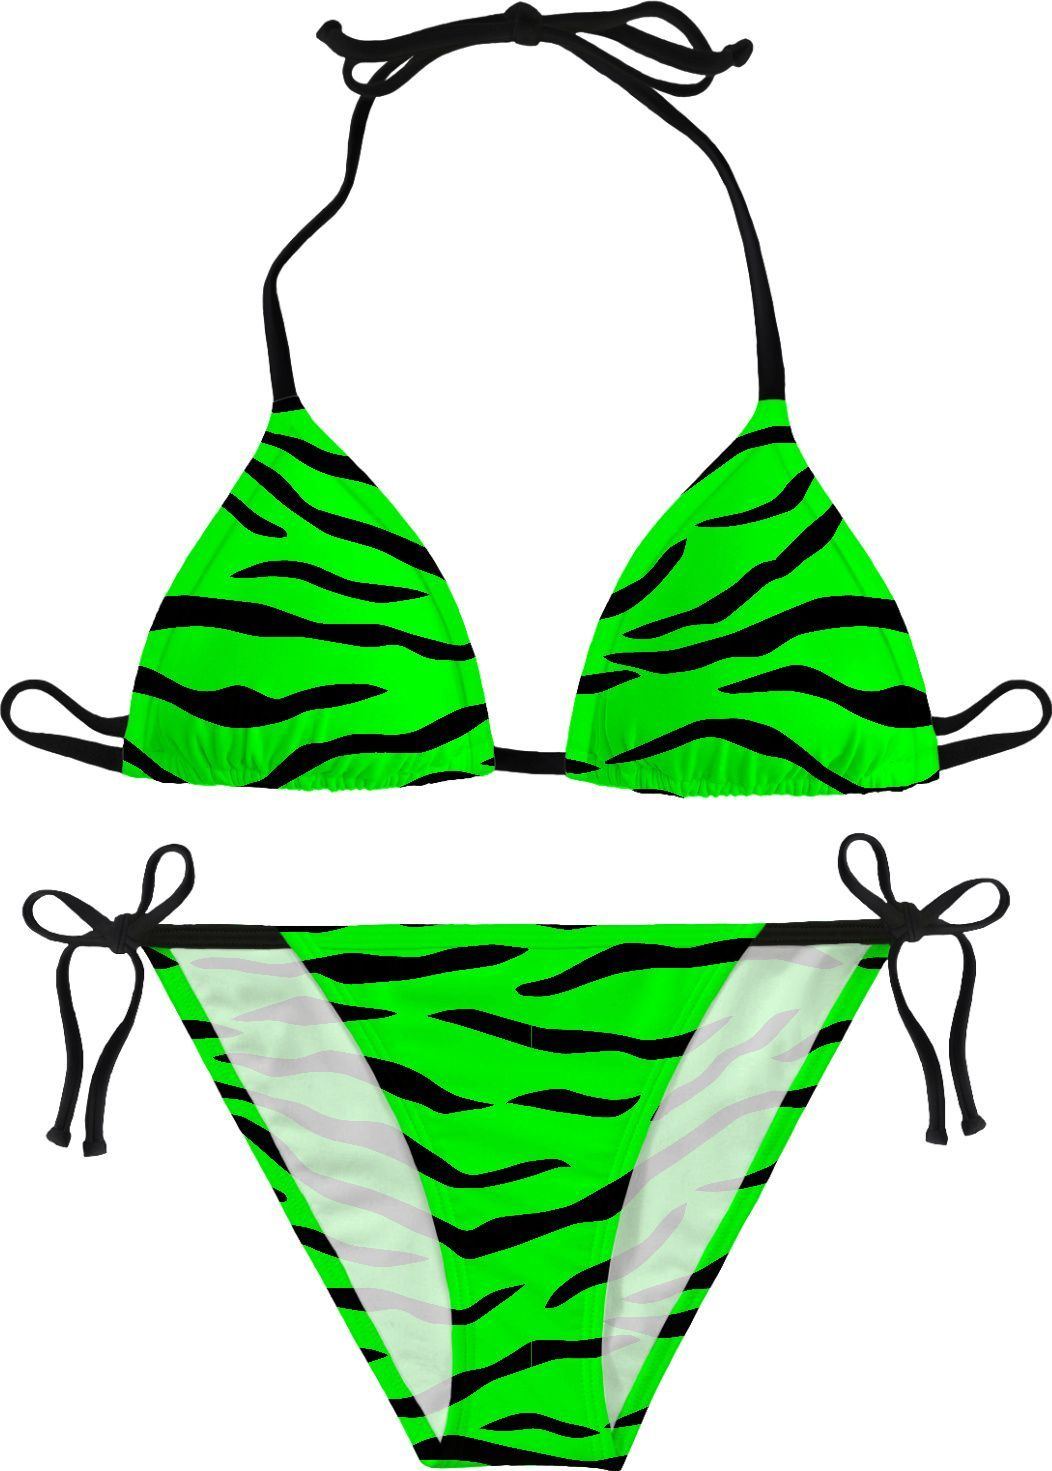 Brambleberry reccomend Green tiger striped bikini